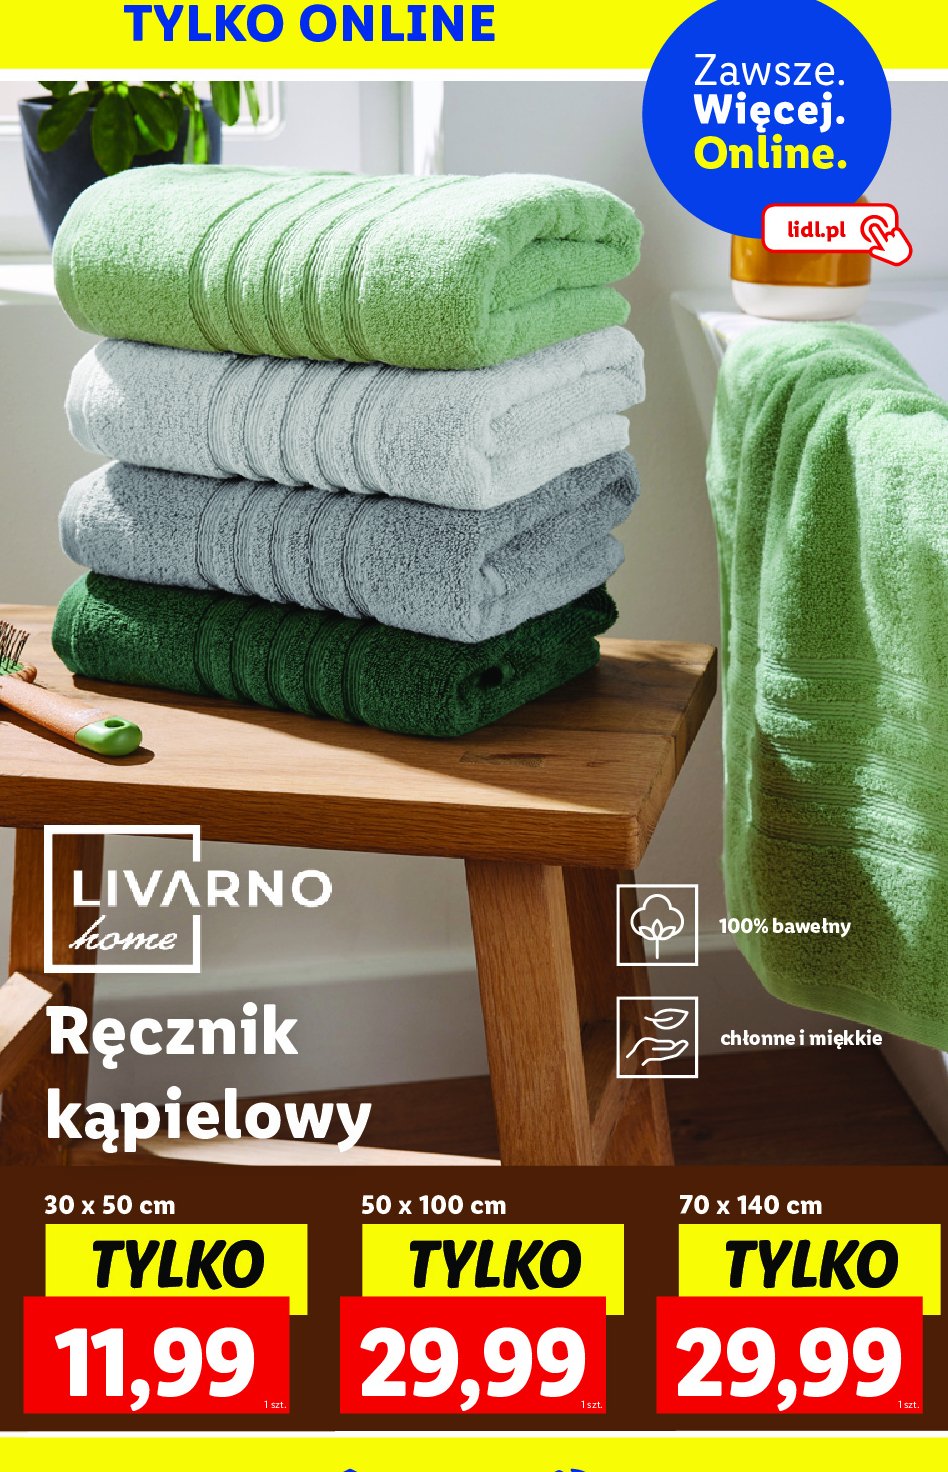 Ręcznik 50 x 100 cm LIVARNO HOME promocja